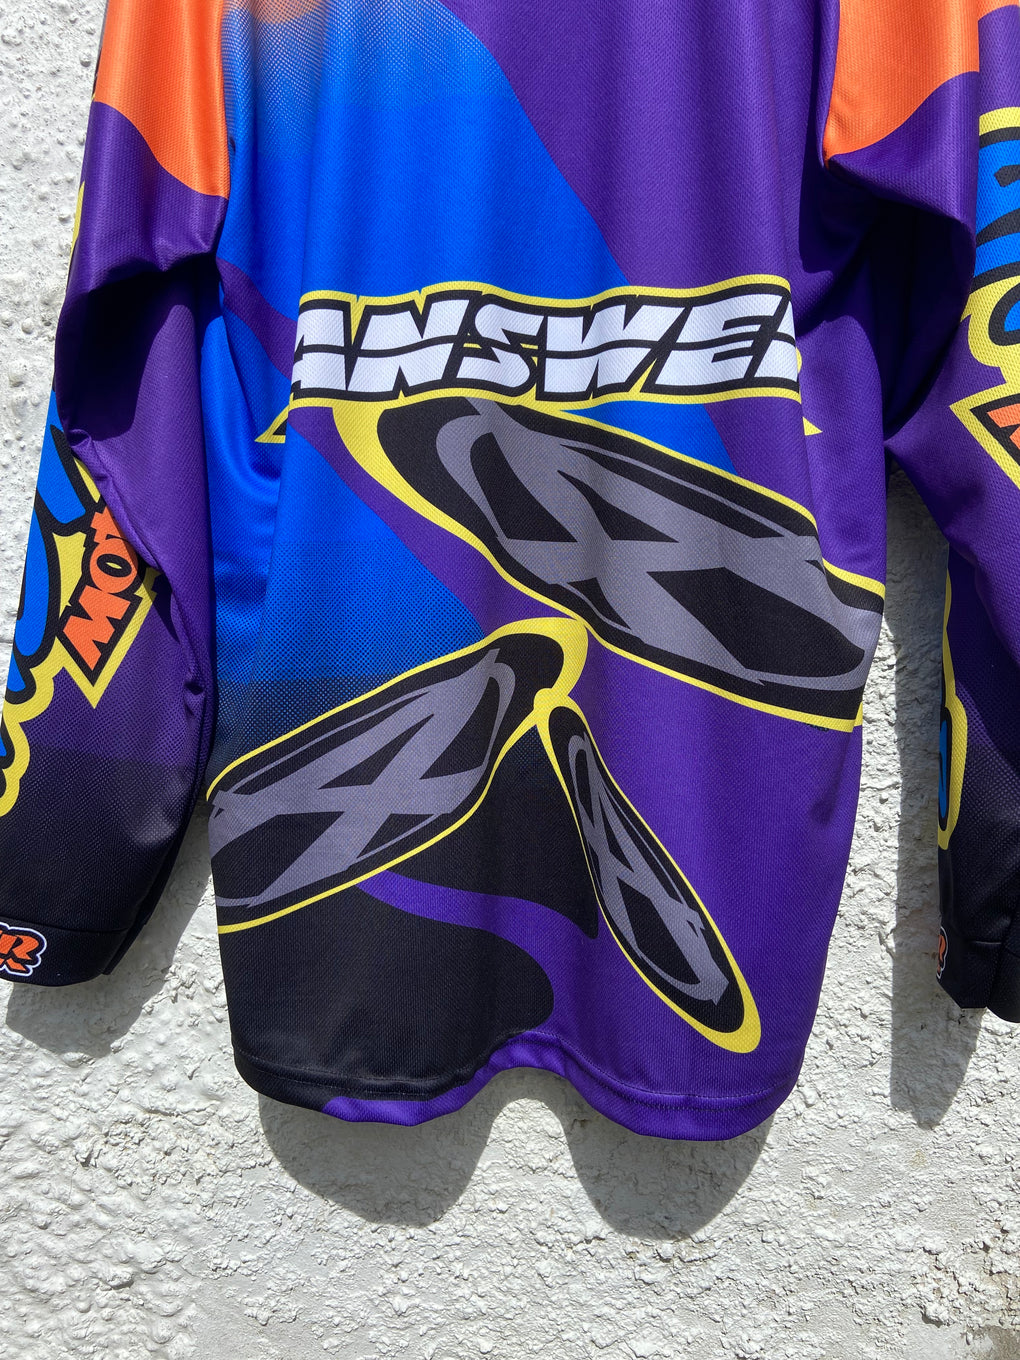 Answer Racing Moto X Jersey (XL)